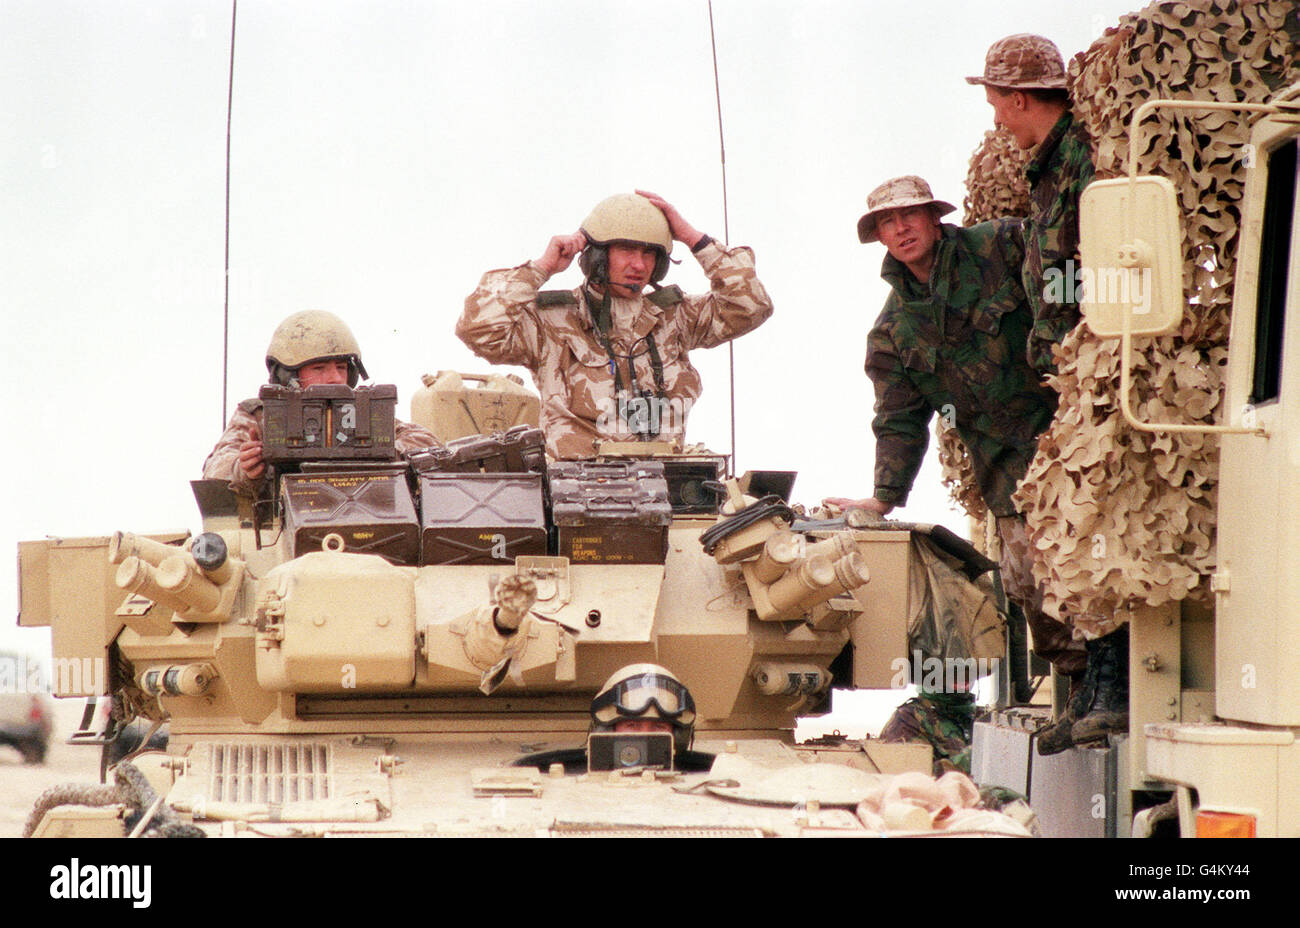 PA News janvier 1991 un véhicule blindé des 16e/5e Queen's Royal Lanciers reçoit des munitions des Royal Engineers pendant la guerre du Golfe. Banque D'Images